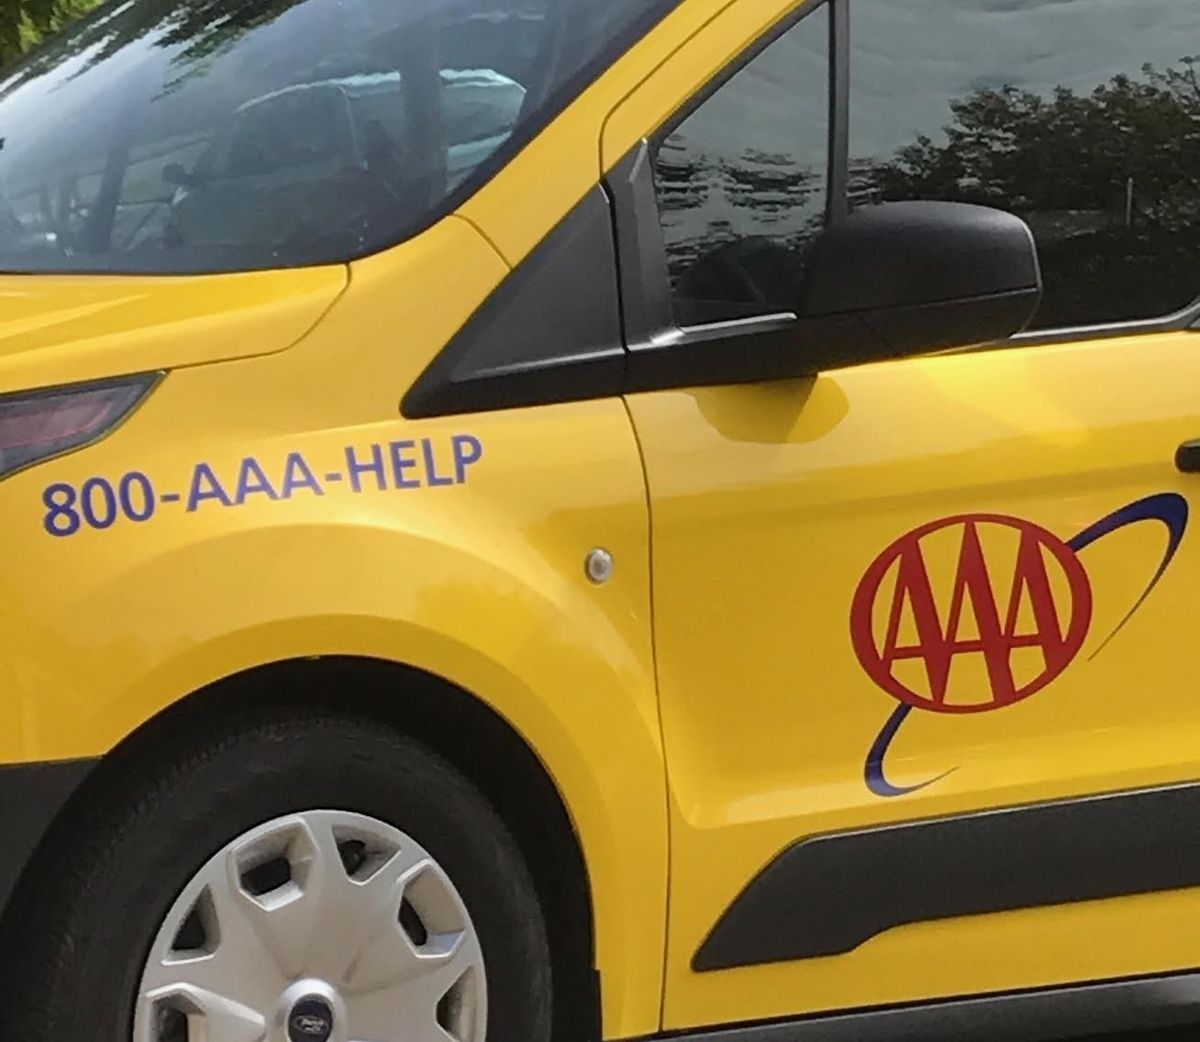 En mor måtte ringe til AAA for en fyr fra AAA, fordi han låste sin bil og forsøgte at låse hendes bil op